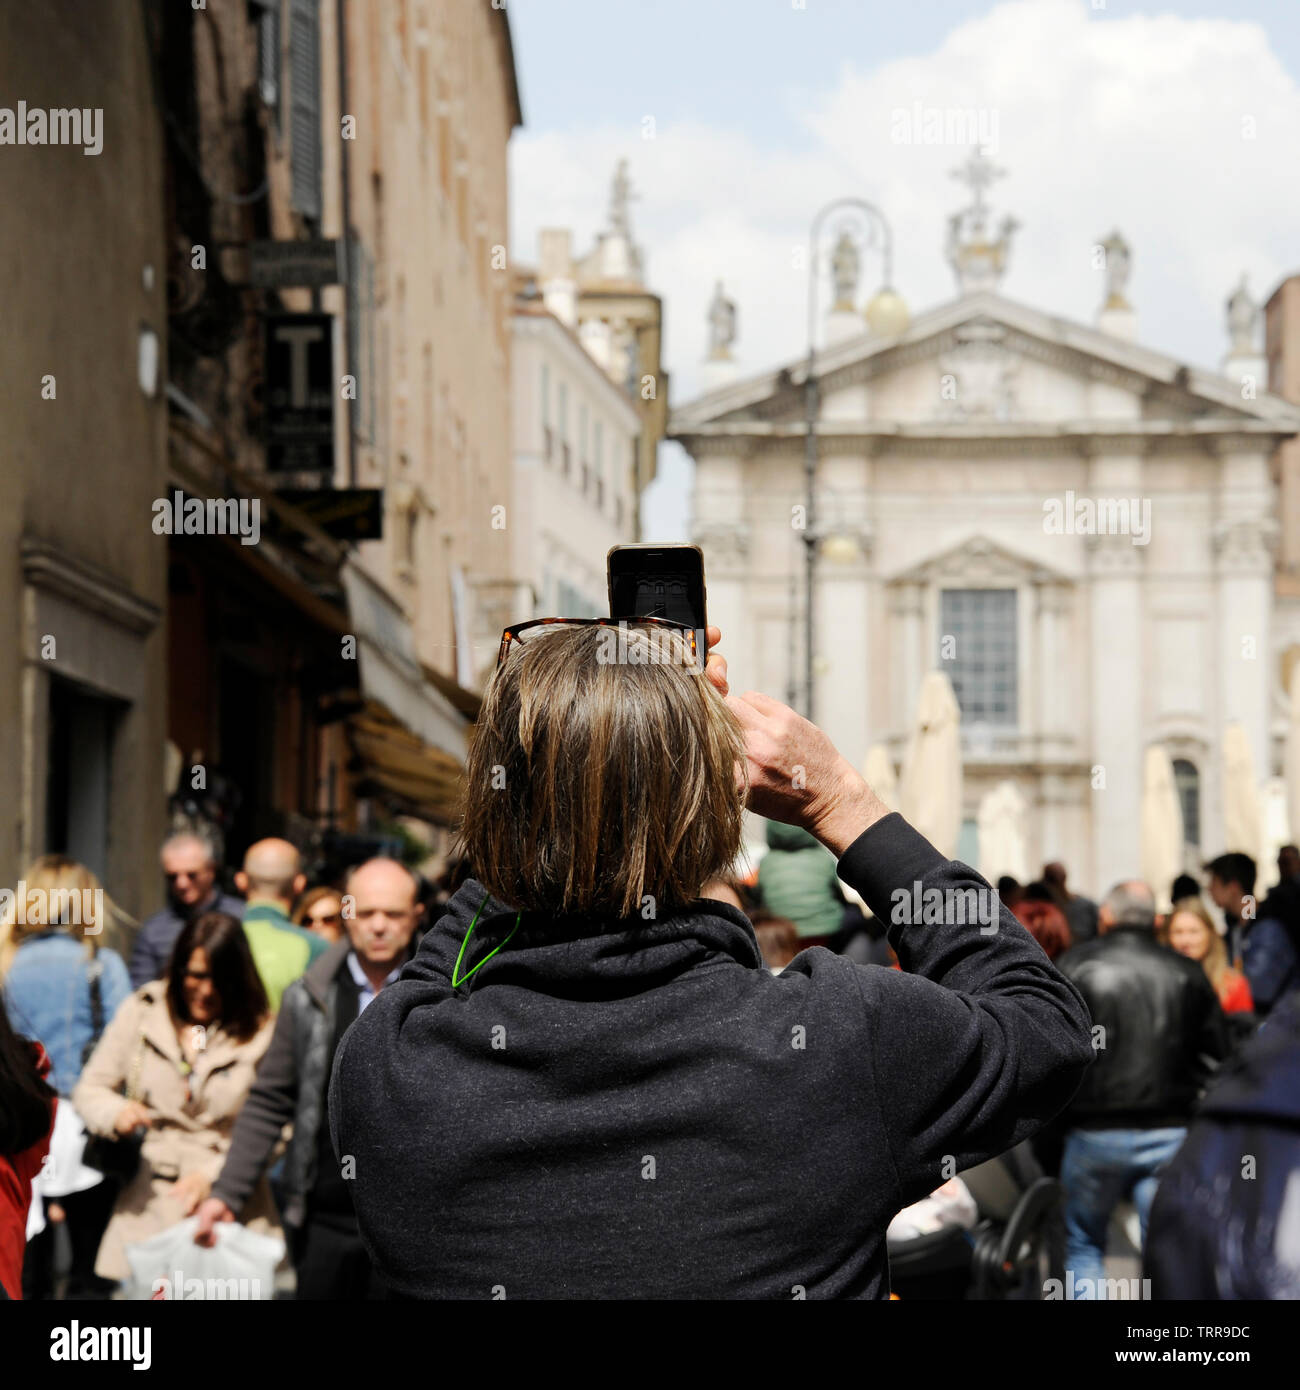 Primo Piano del Turista uomo sulla Strada a Mantova, prendendo Foto di Piazza Sordello con il telefono. Mantova, Italia Stockfoto